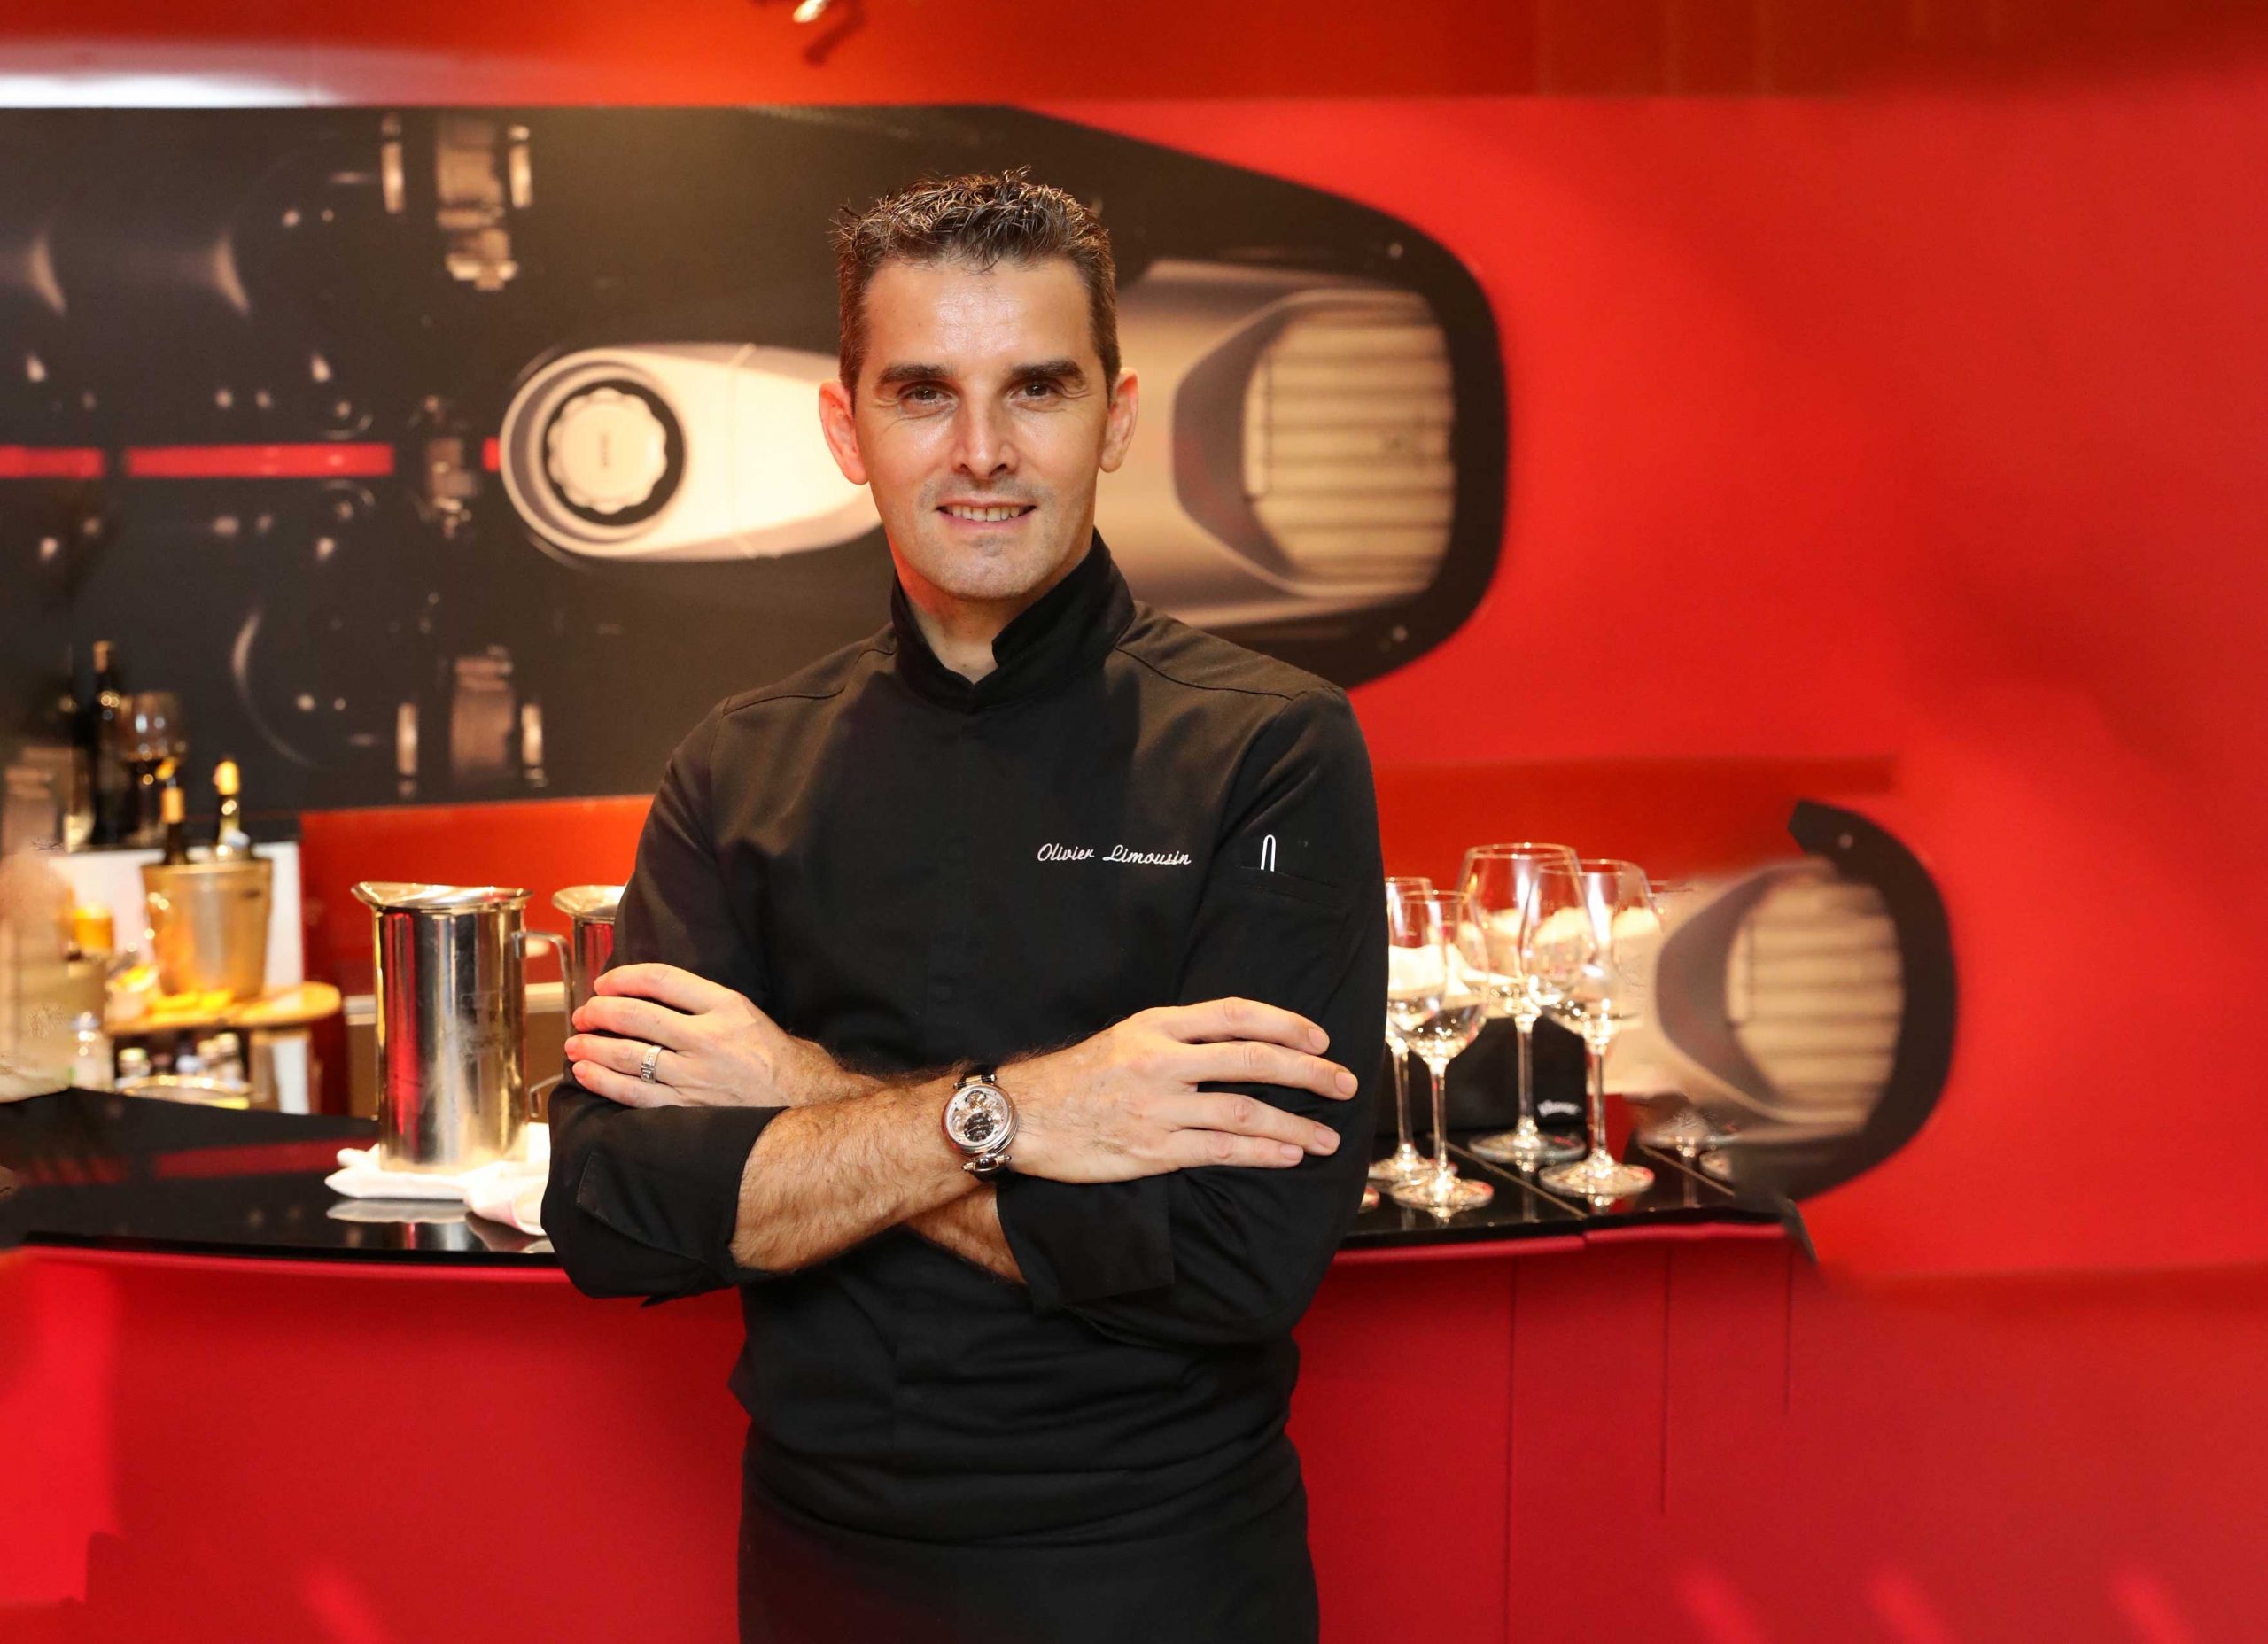 Award-winning Chef Olivier Limousin joins the BOVET family